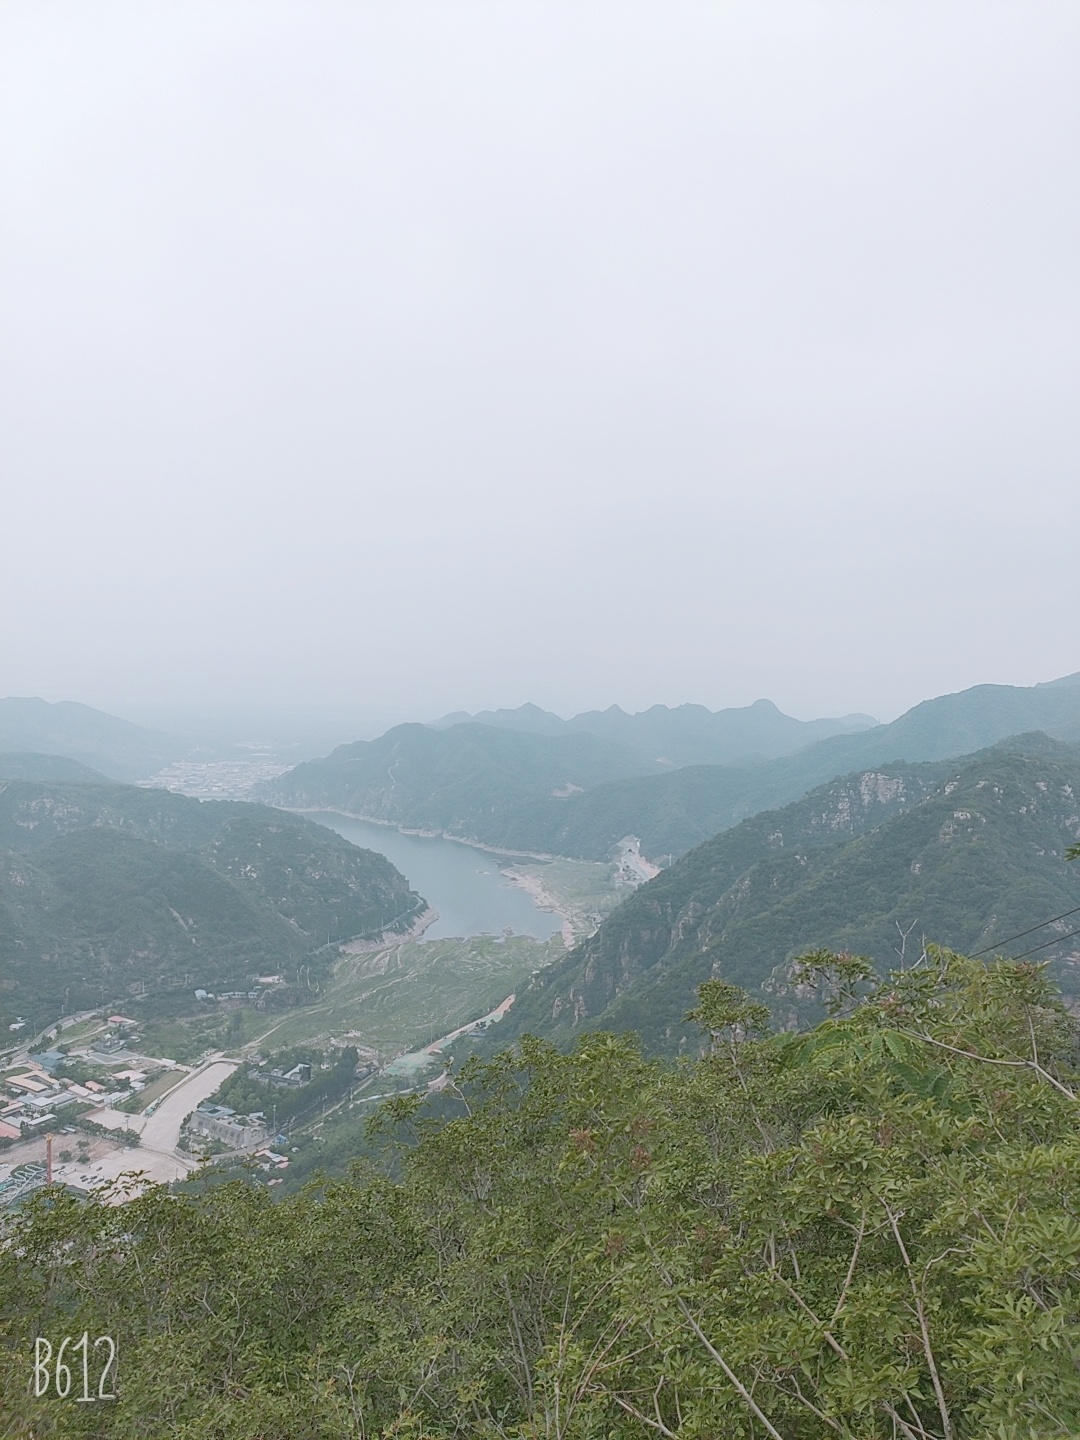 自驾游开车一个半小时北京到平谷外京东大峡谷